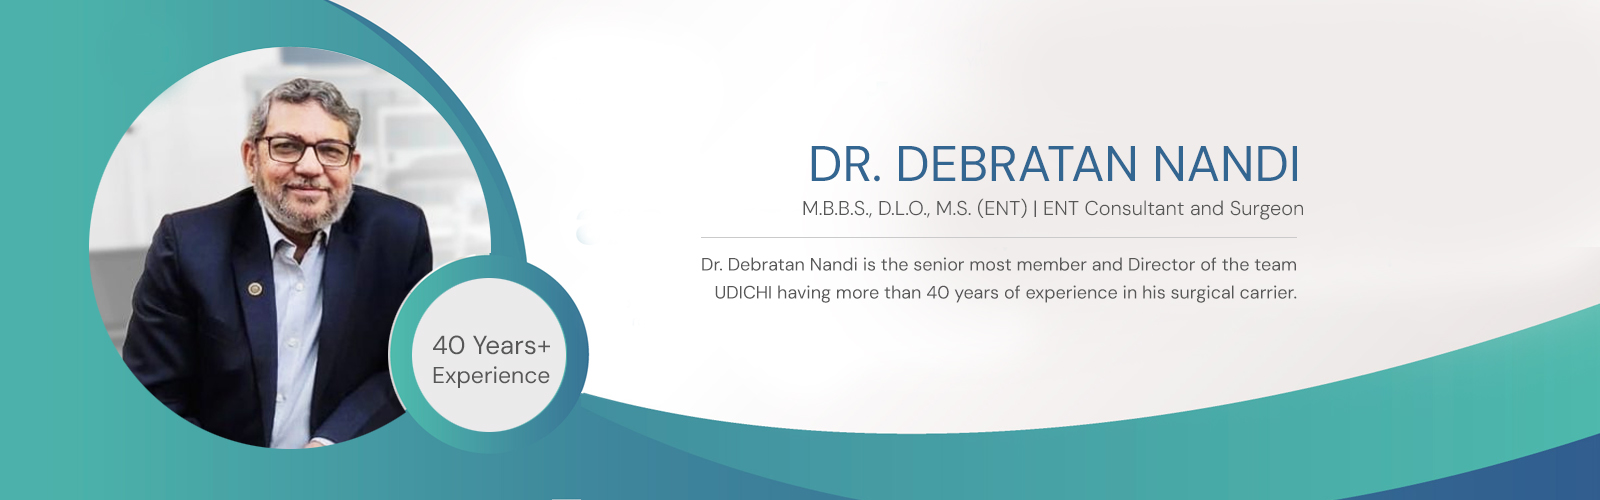 Dr. Debratan Nandi